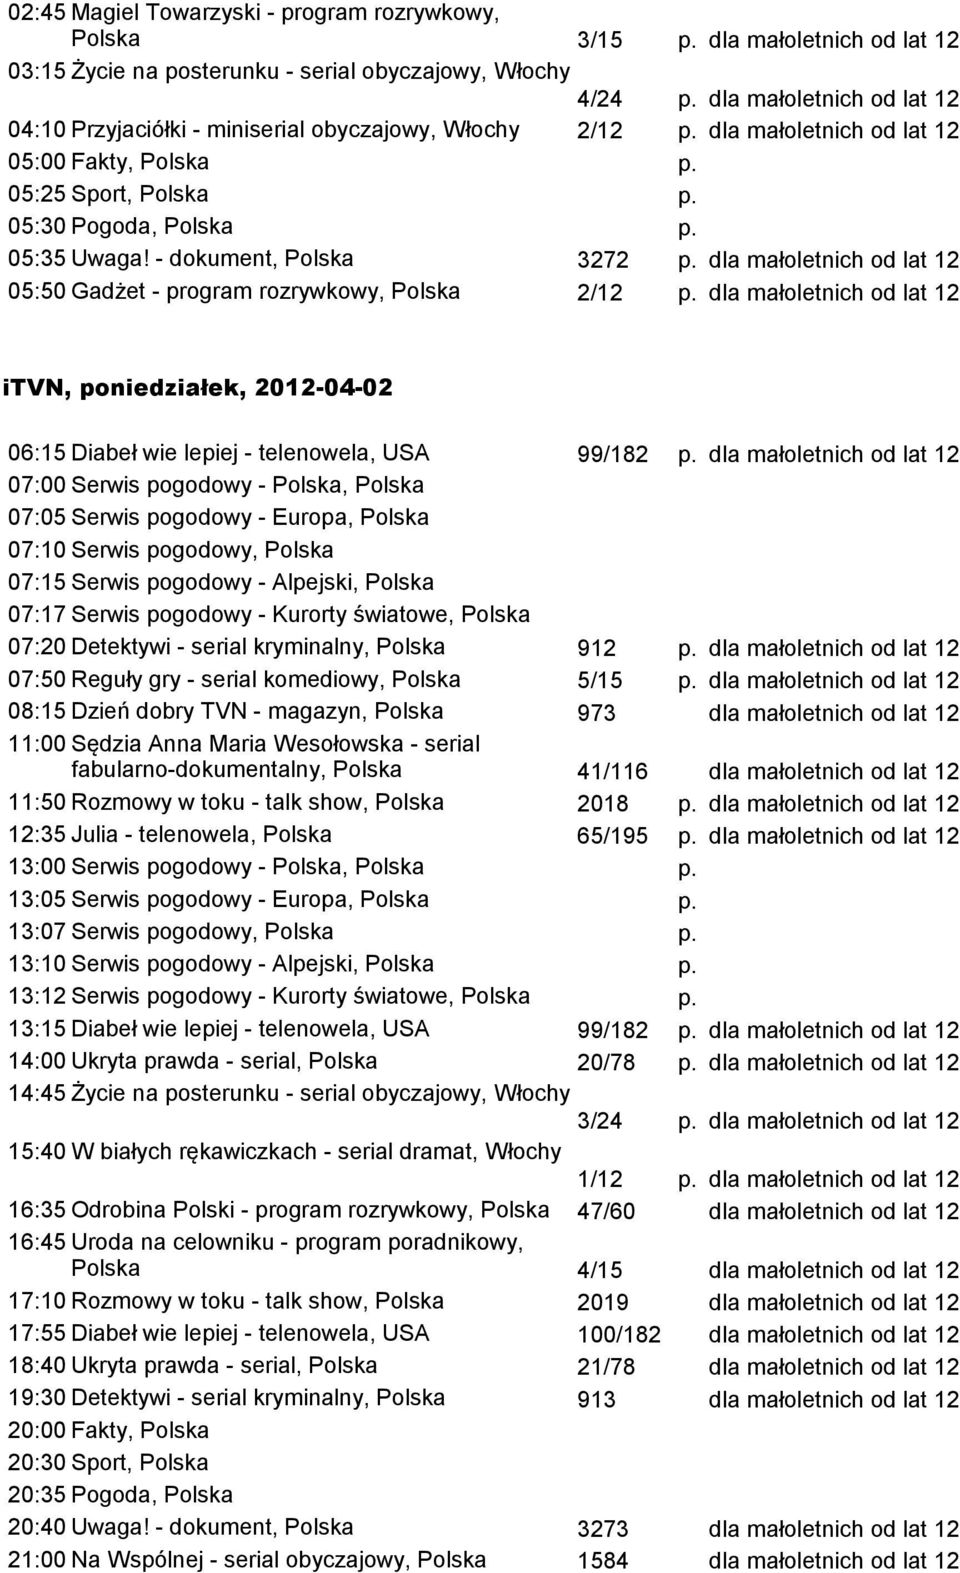 07:20 Detektywi - serial kryminalny, Polska 912 p. 07:50 Reguły gry - serial komediowy, Polska 5/15 p.